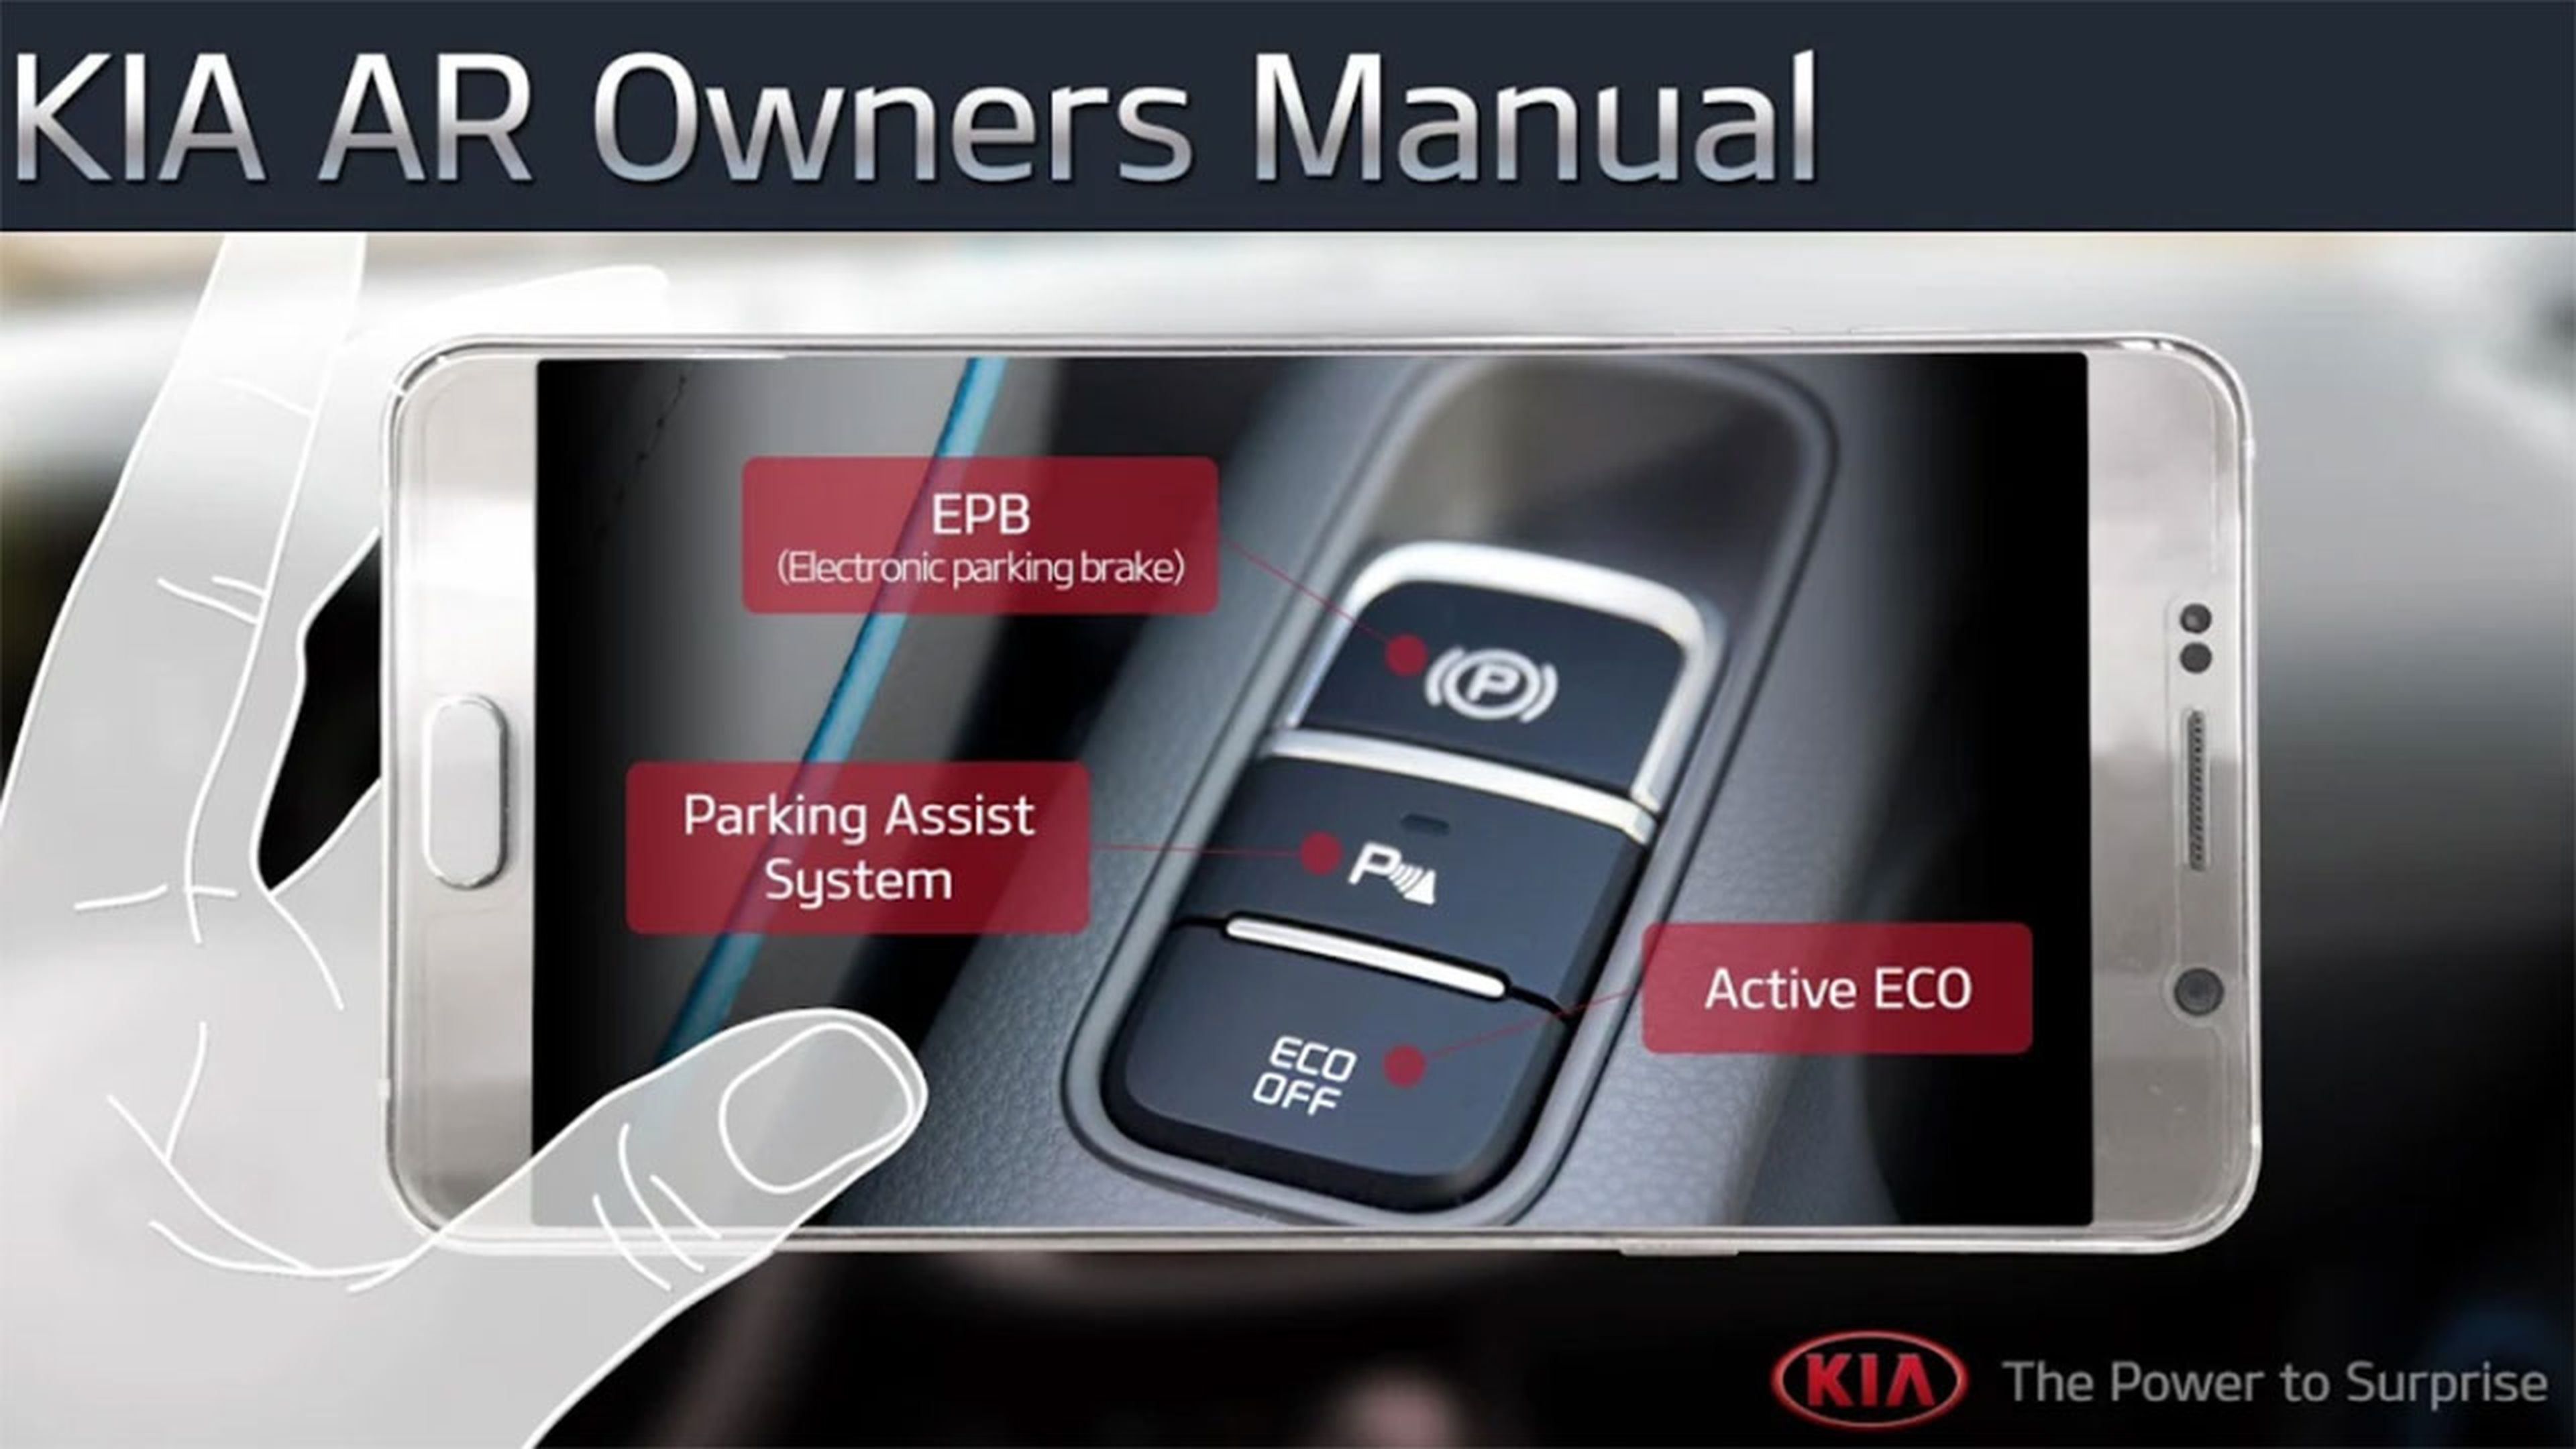 Kia Owner's Manual App